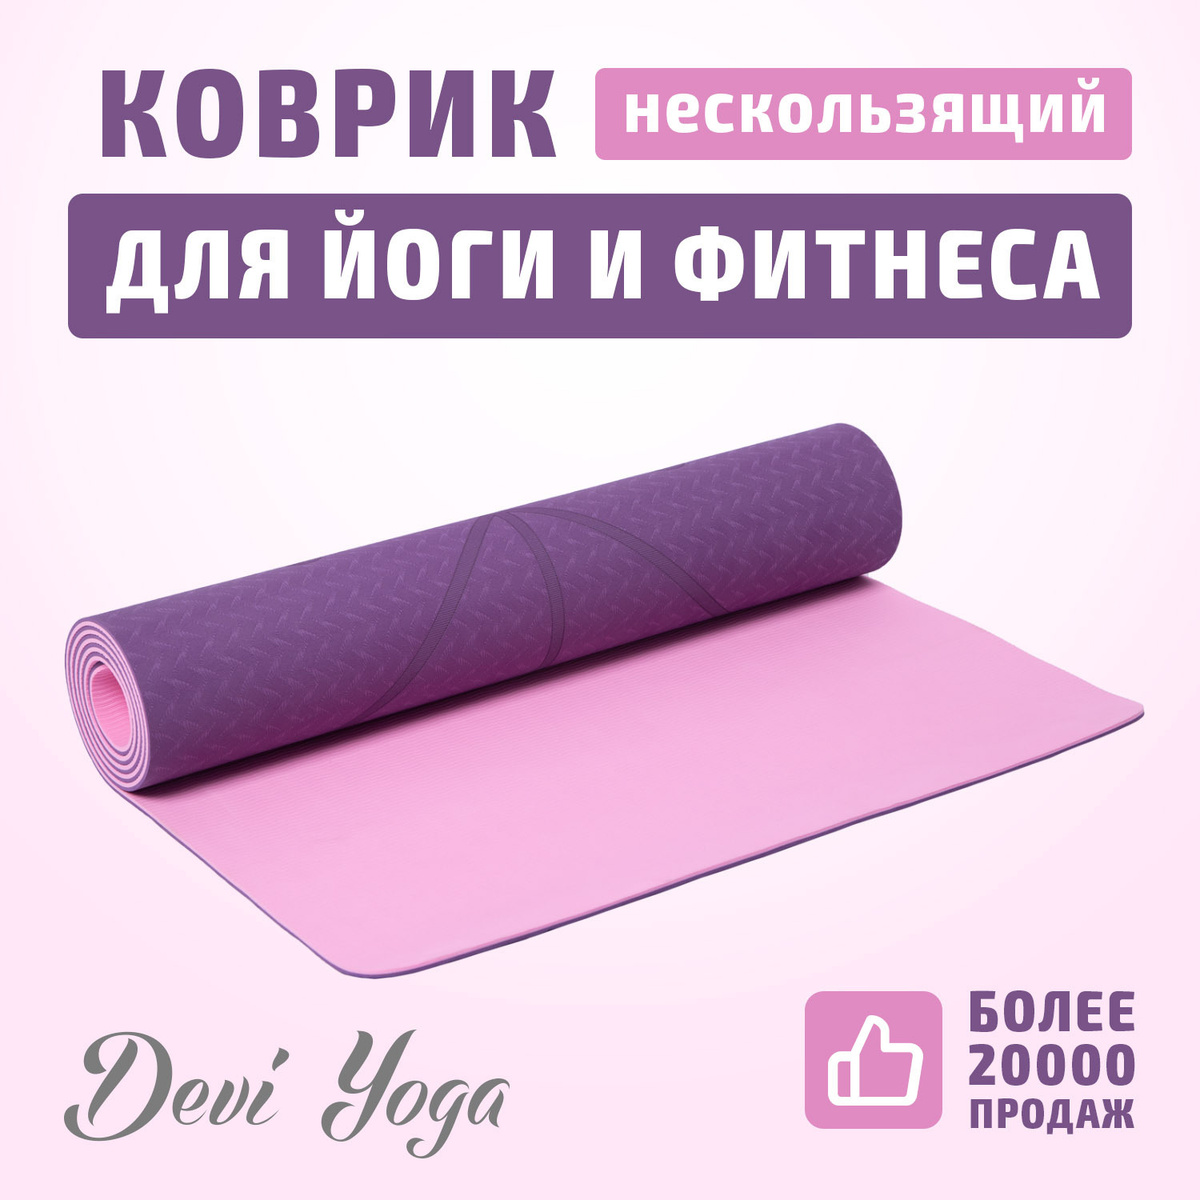 Коврик для йоги и фитнеса Devi Yoga, спортивный нескользящий коврик с разметкой 183x61x0,5 см, фиолетово-розовый #1